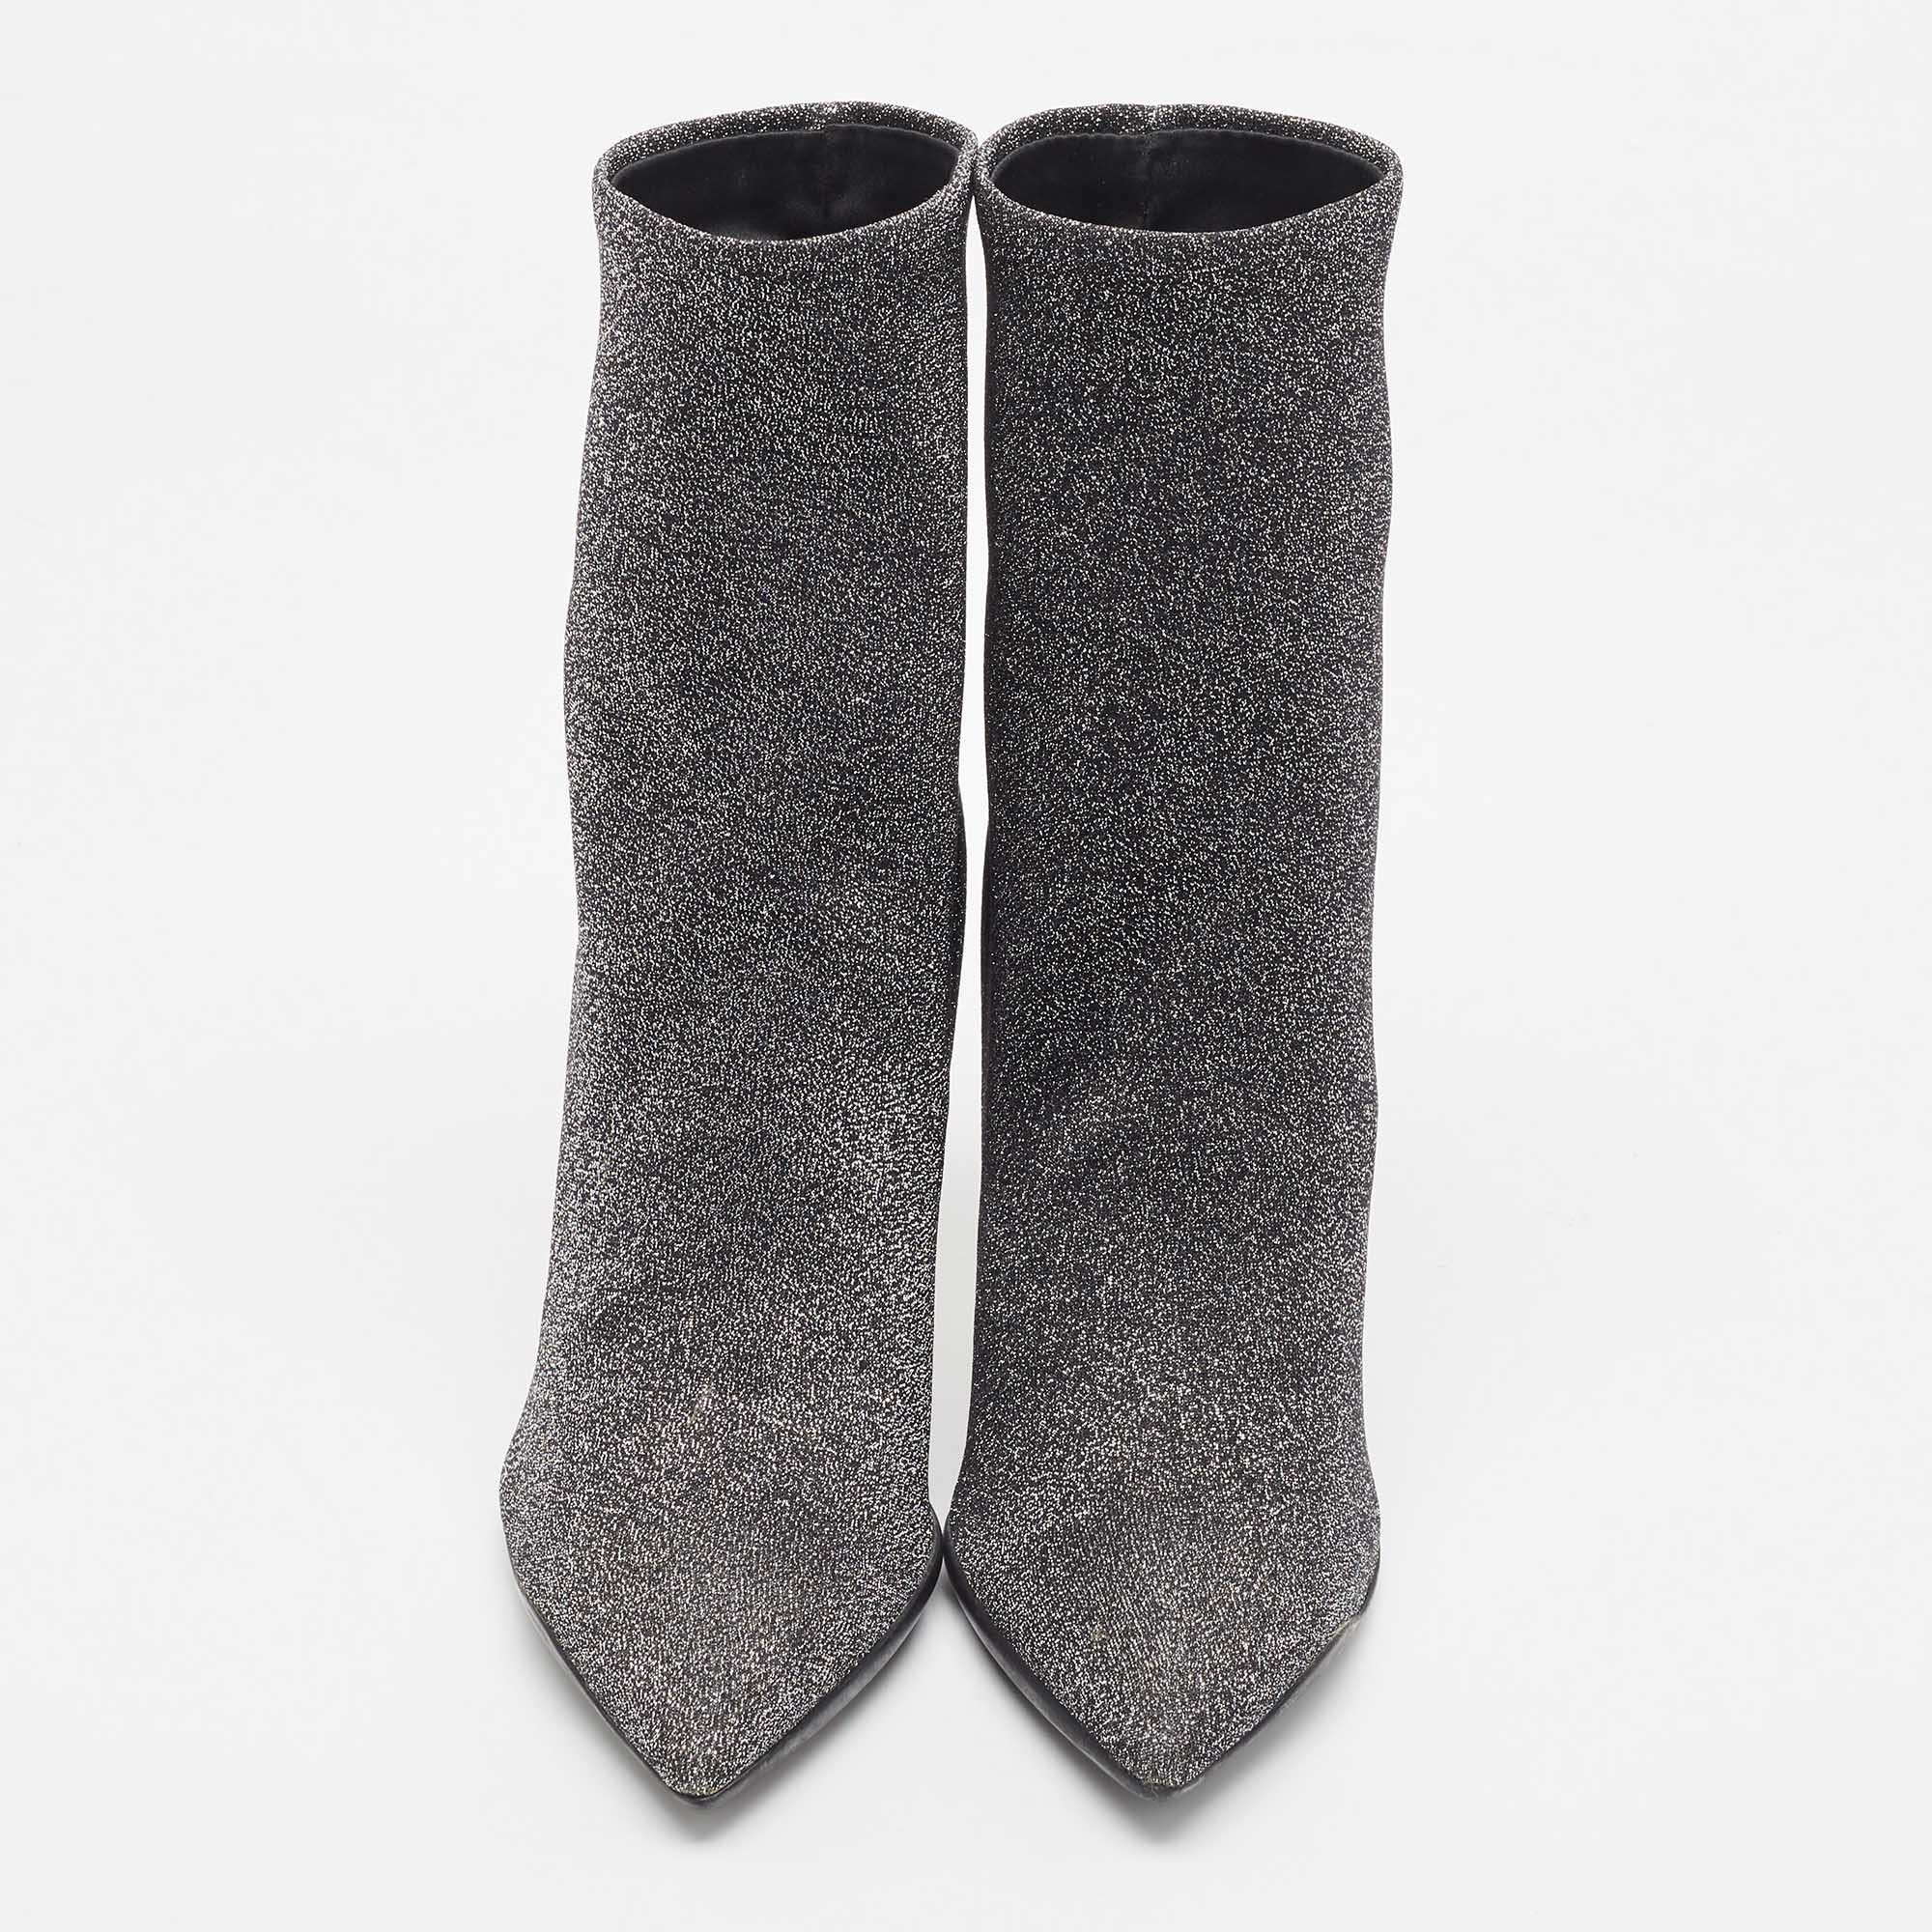 Rene Caovilla Silver Glitter Fabric Ankle Boots Size 37